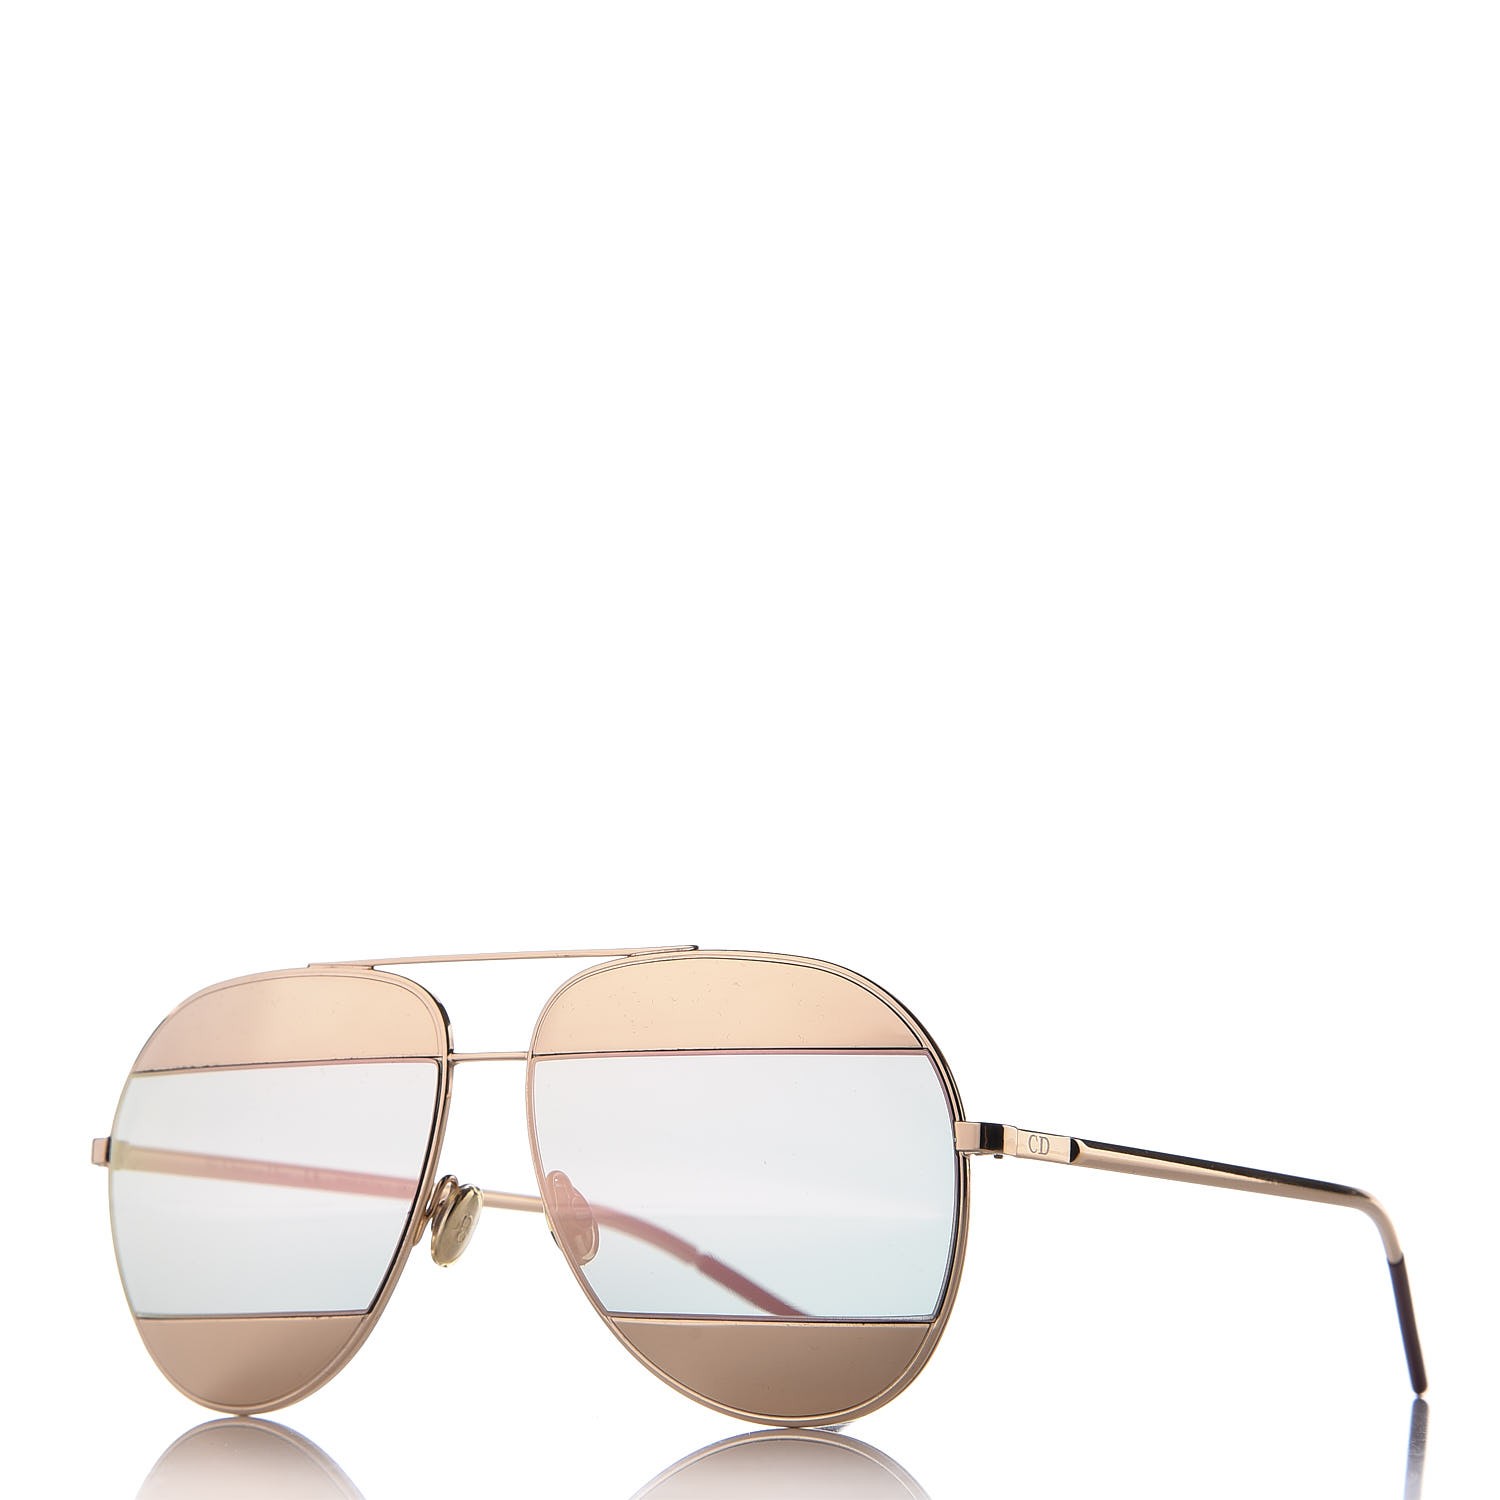 christian dior aviator sunglasses split